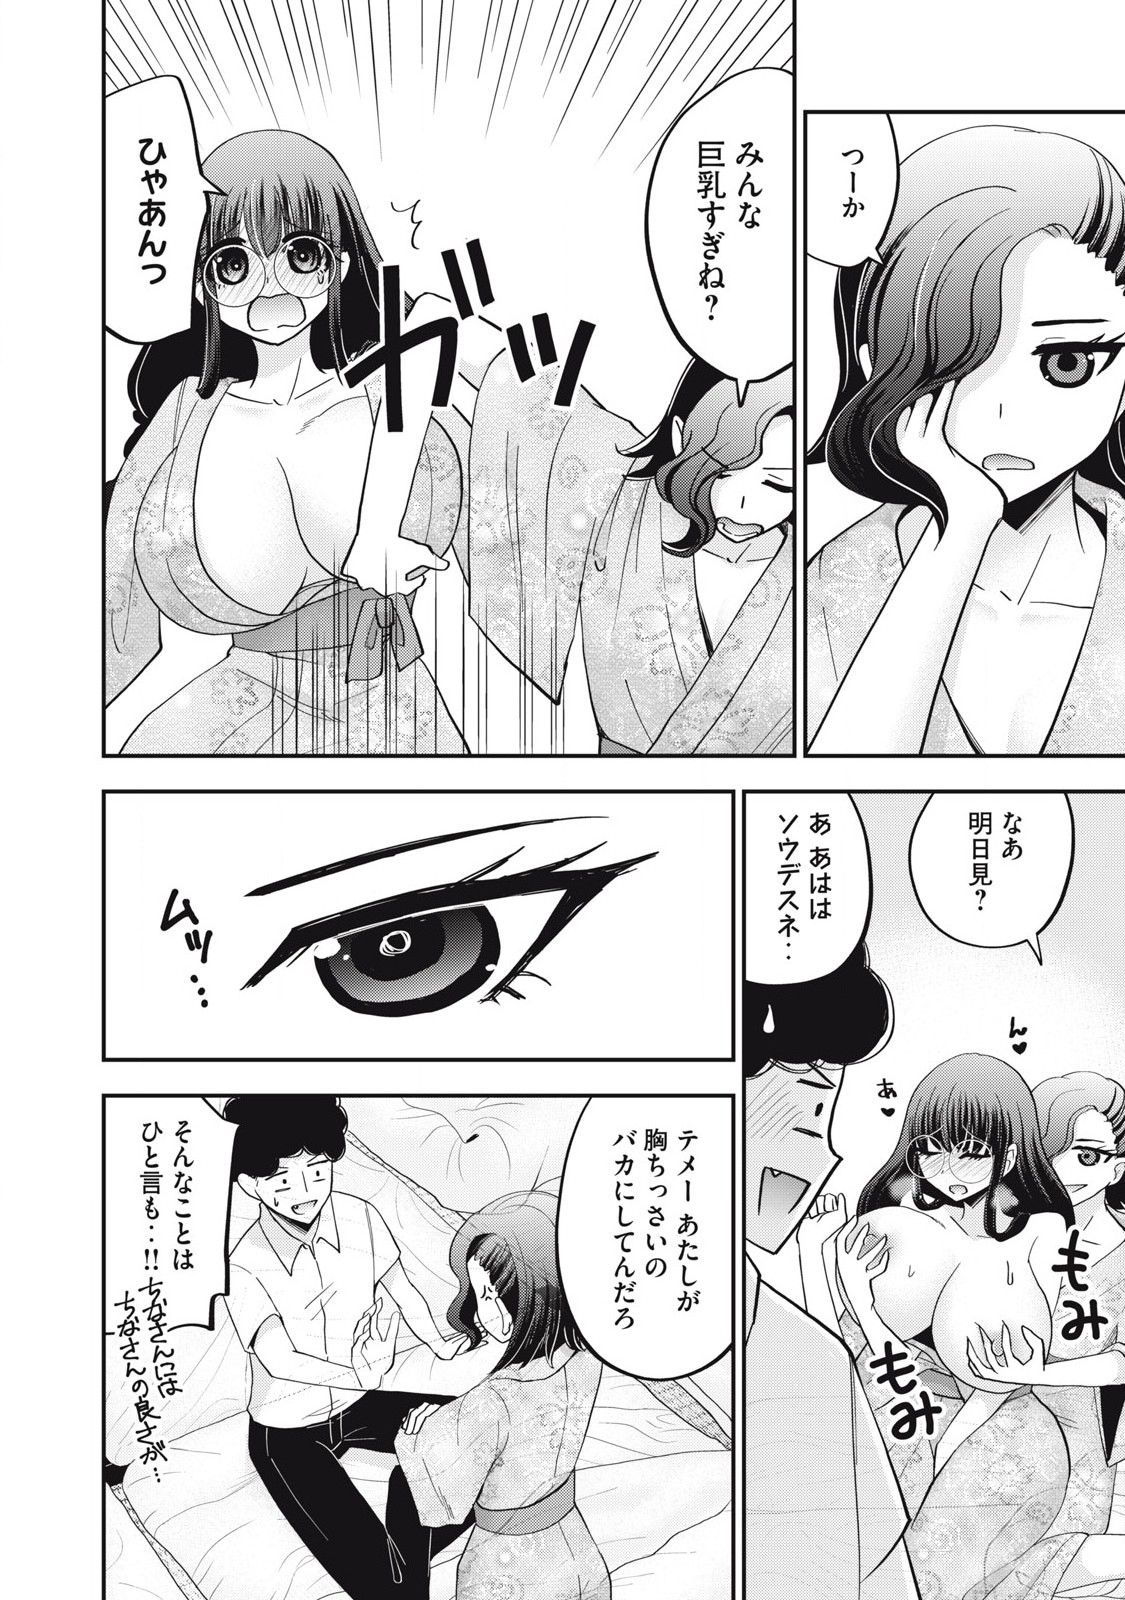 Yumeutsutsu no Hana no Sono - Chapter 29 - Page 6